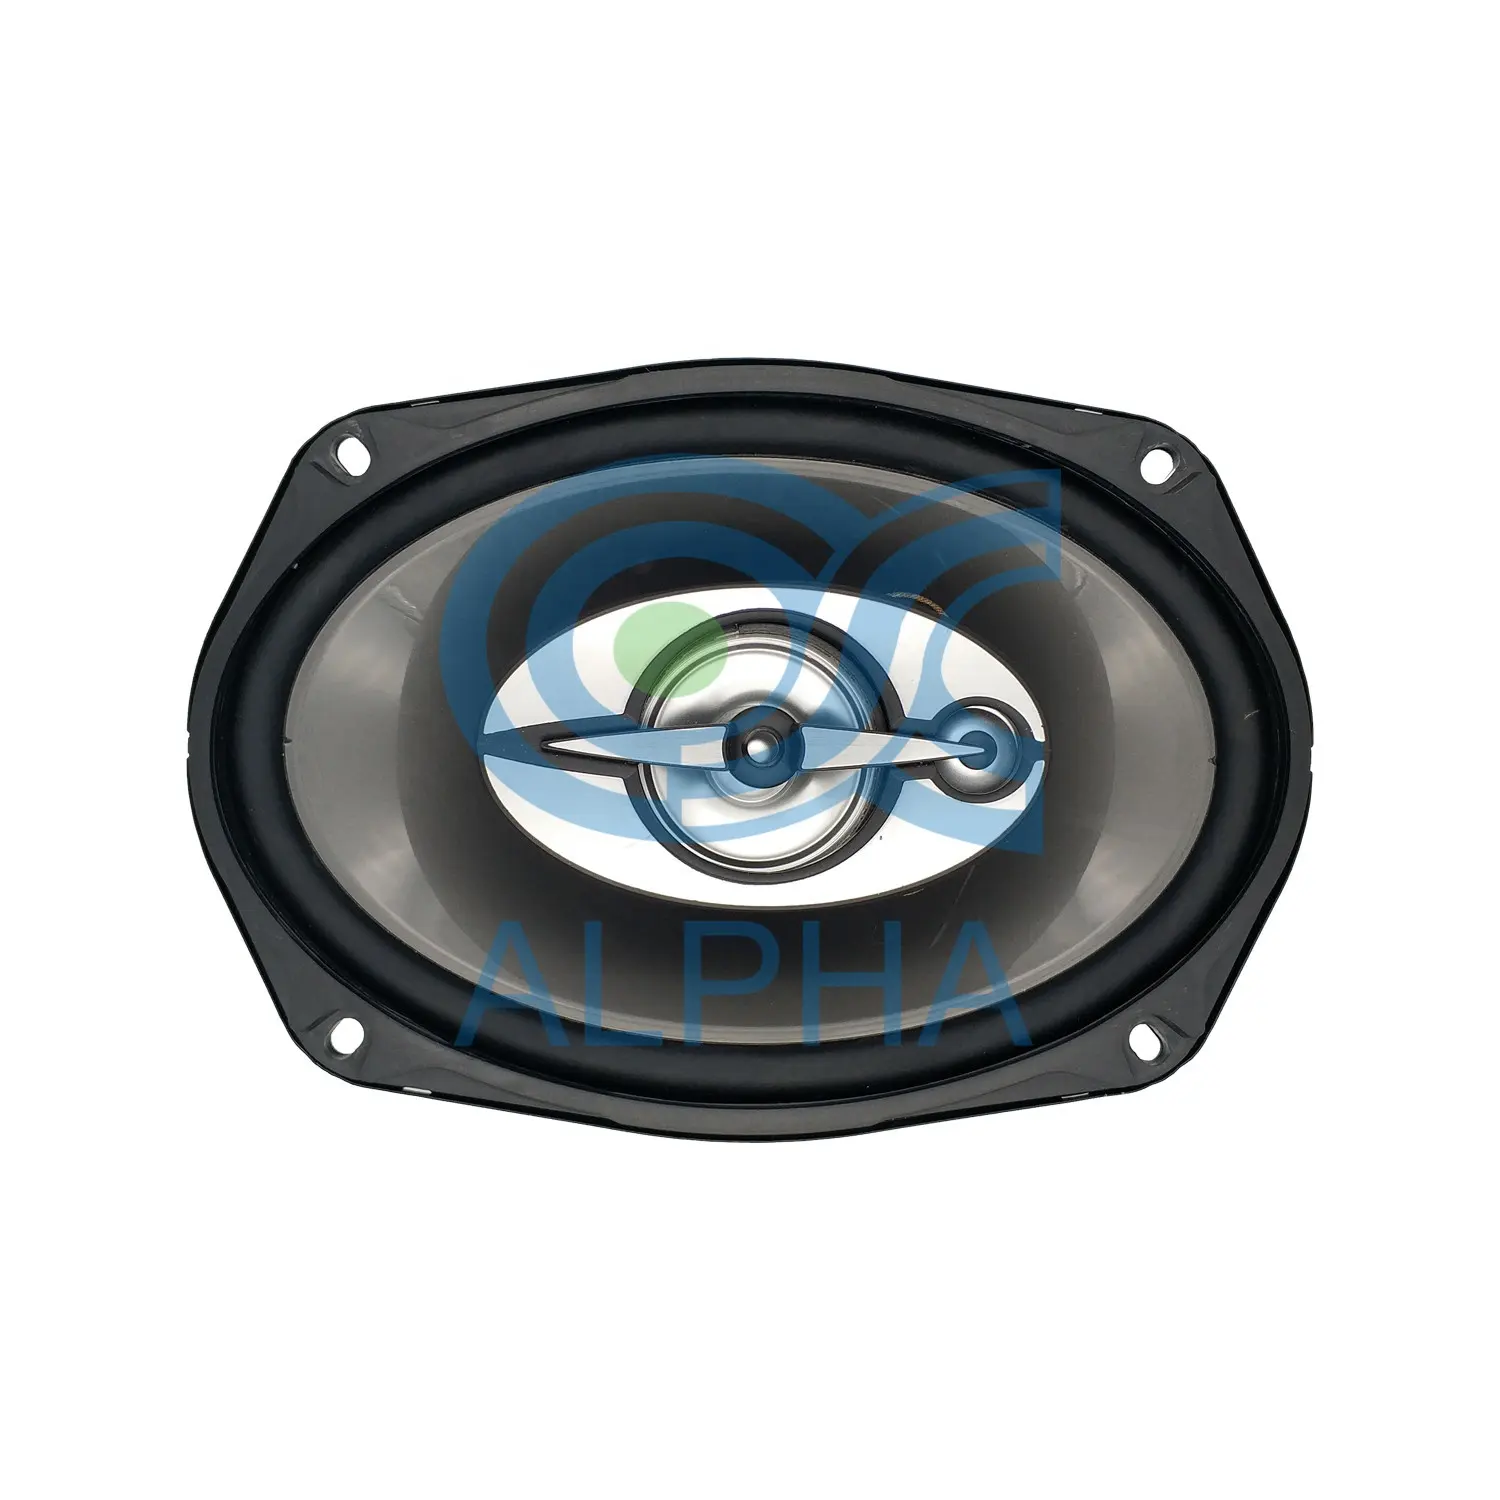 Oem 6X9 Inch Auto Audio Luidspreker Onderdelen 3 Way Powered Muziek Woofer Coaxiale Amp Sirene Tweeter Speaker Voor auto Mp3 Mp4 Versterker